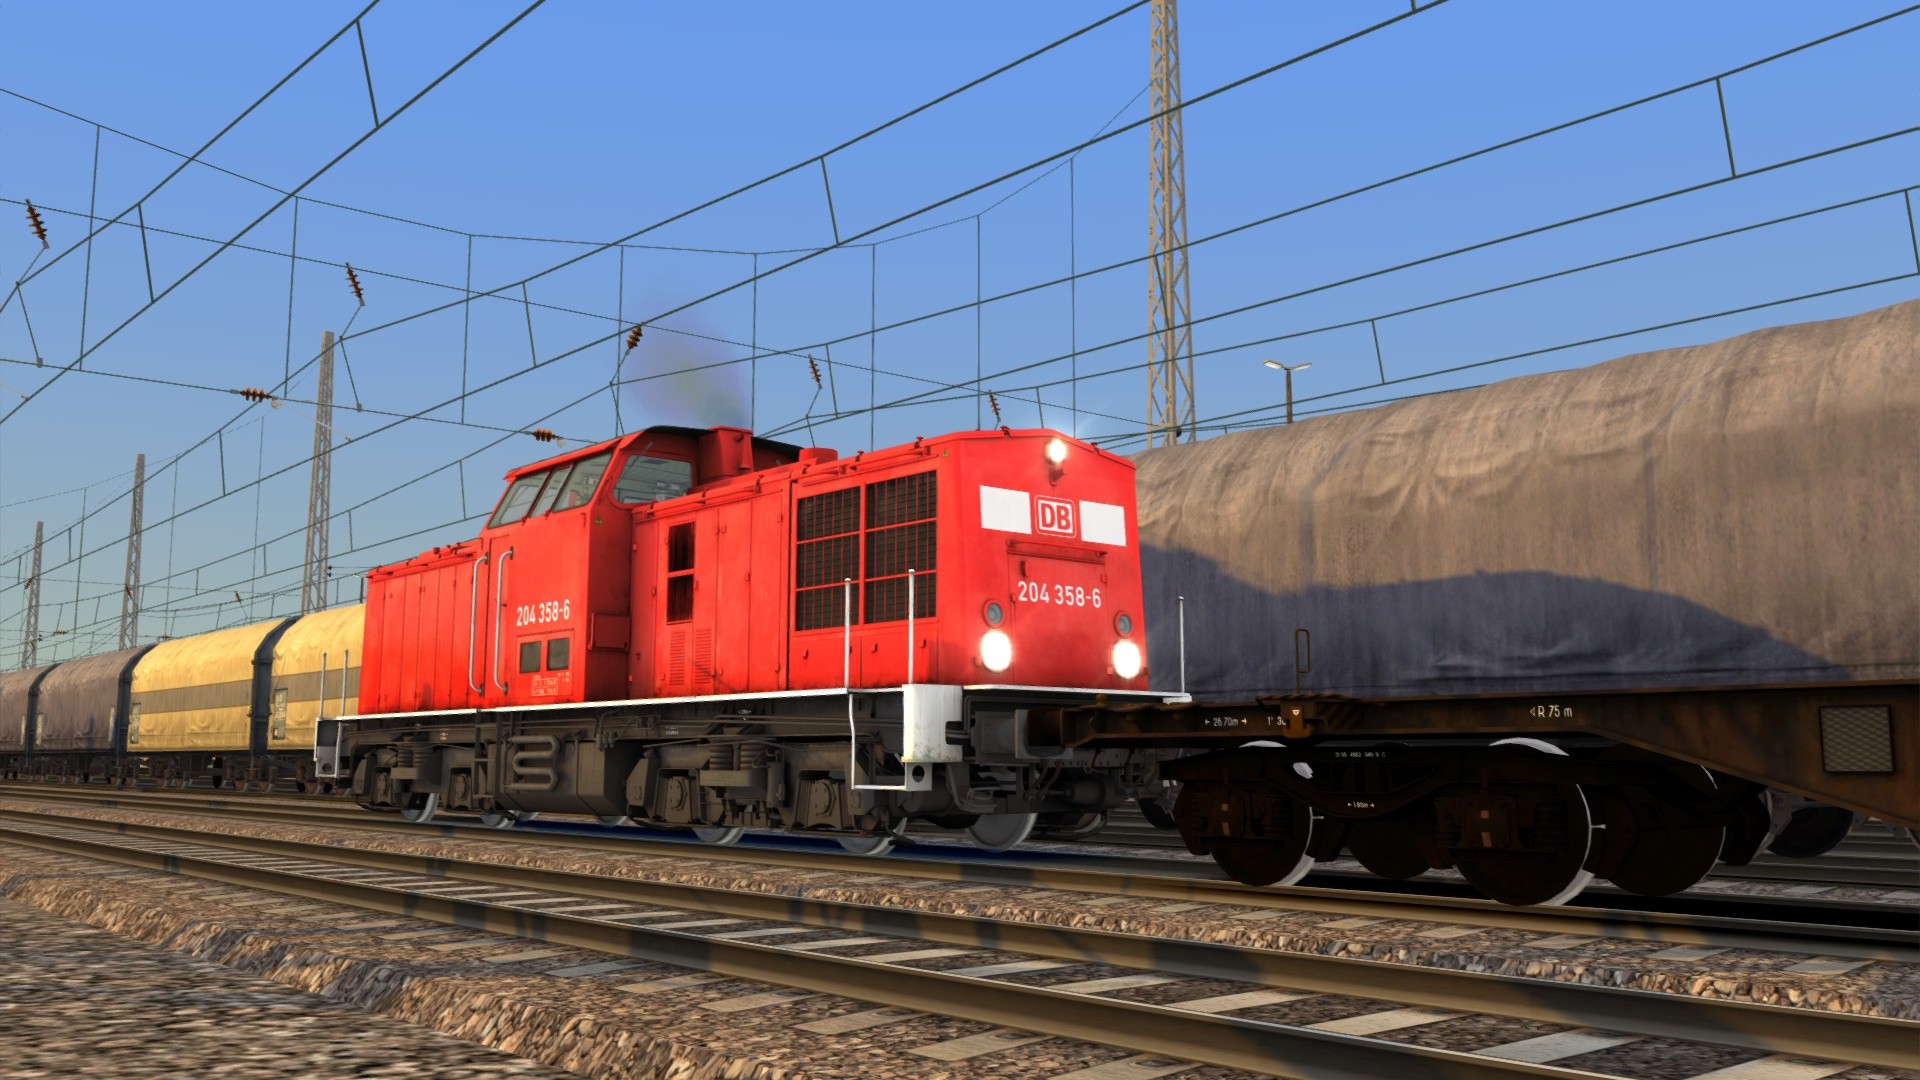 [$ 0.9] Train Simulator - DB BR 204 Loco Add-On DLC Steam CD Key